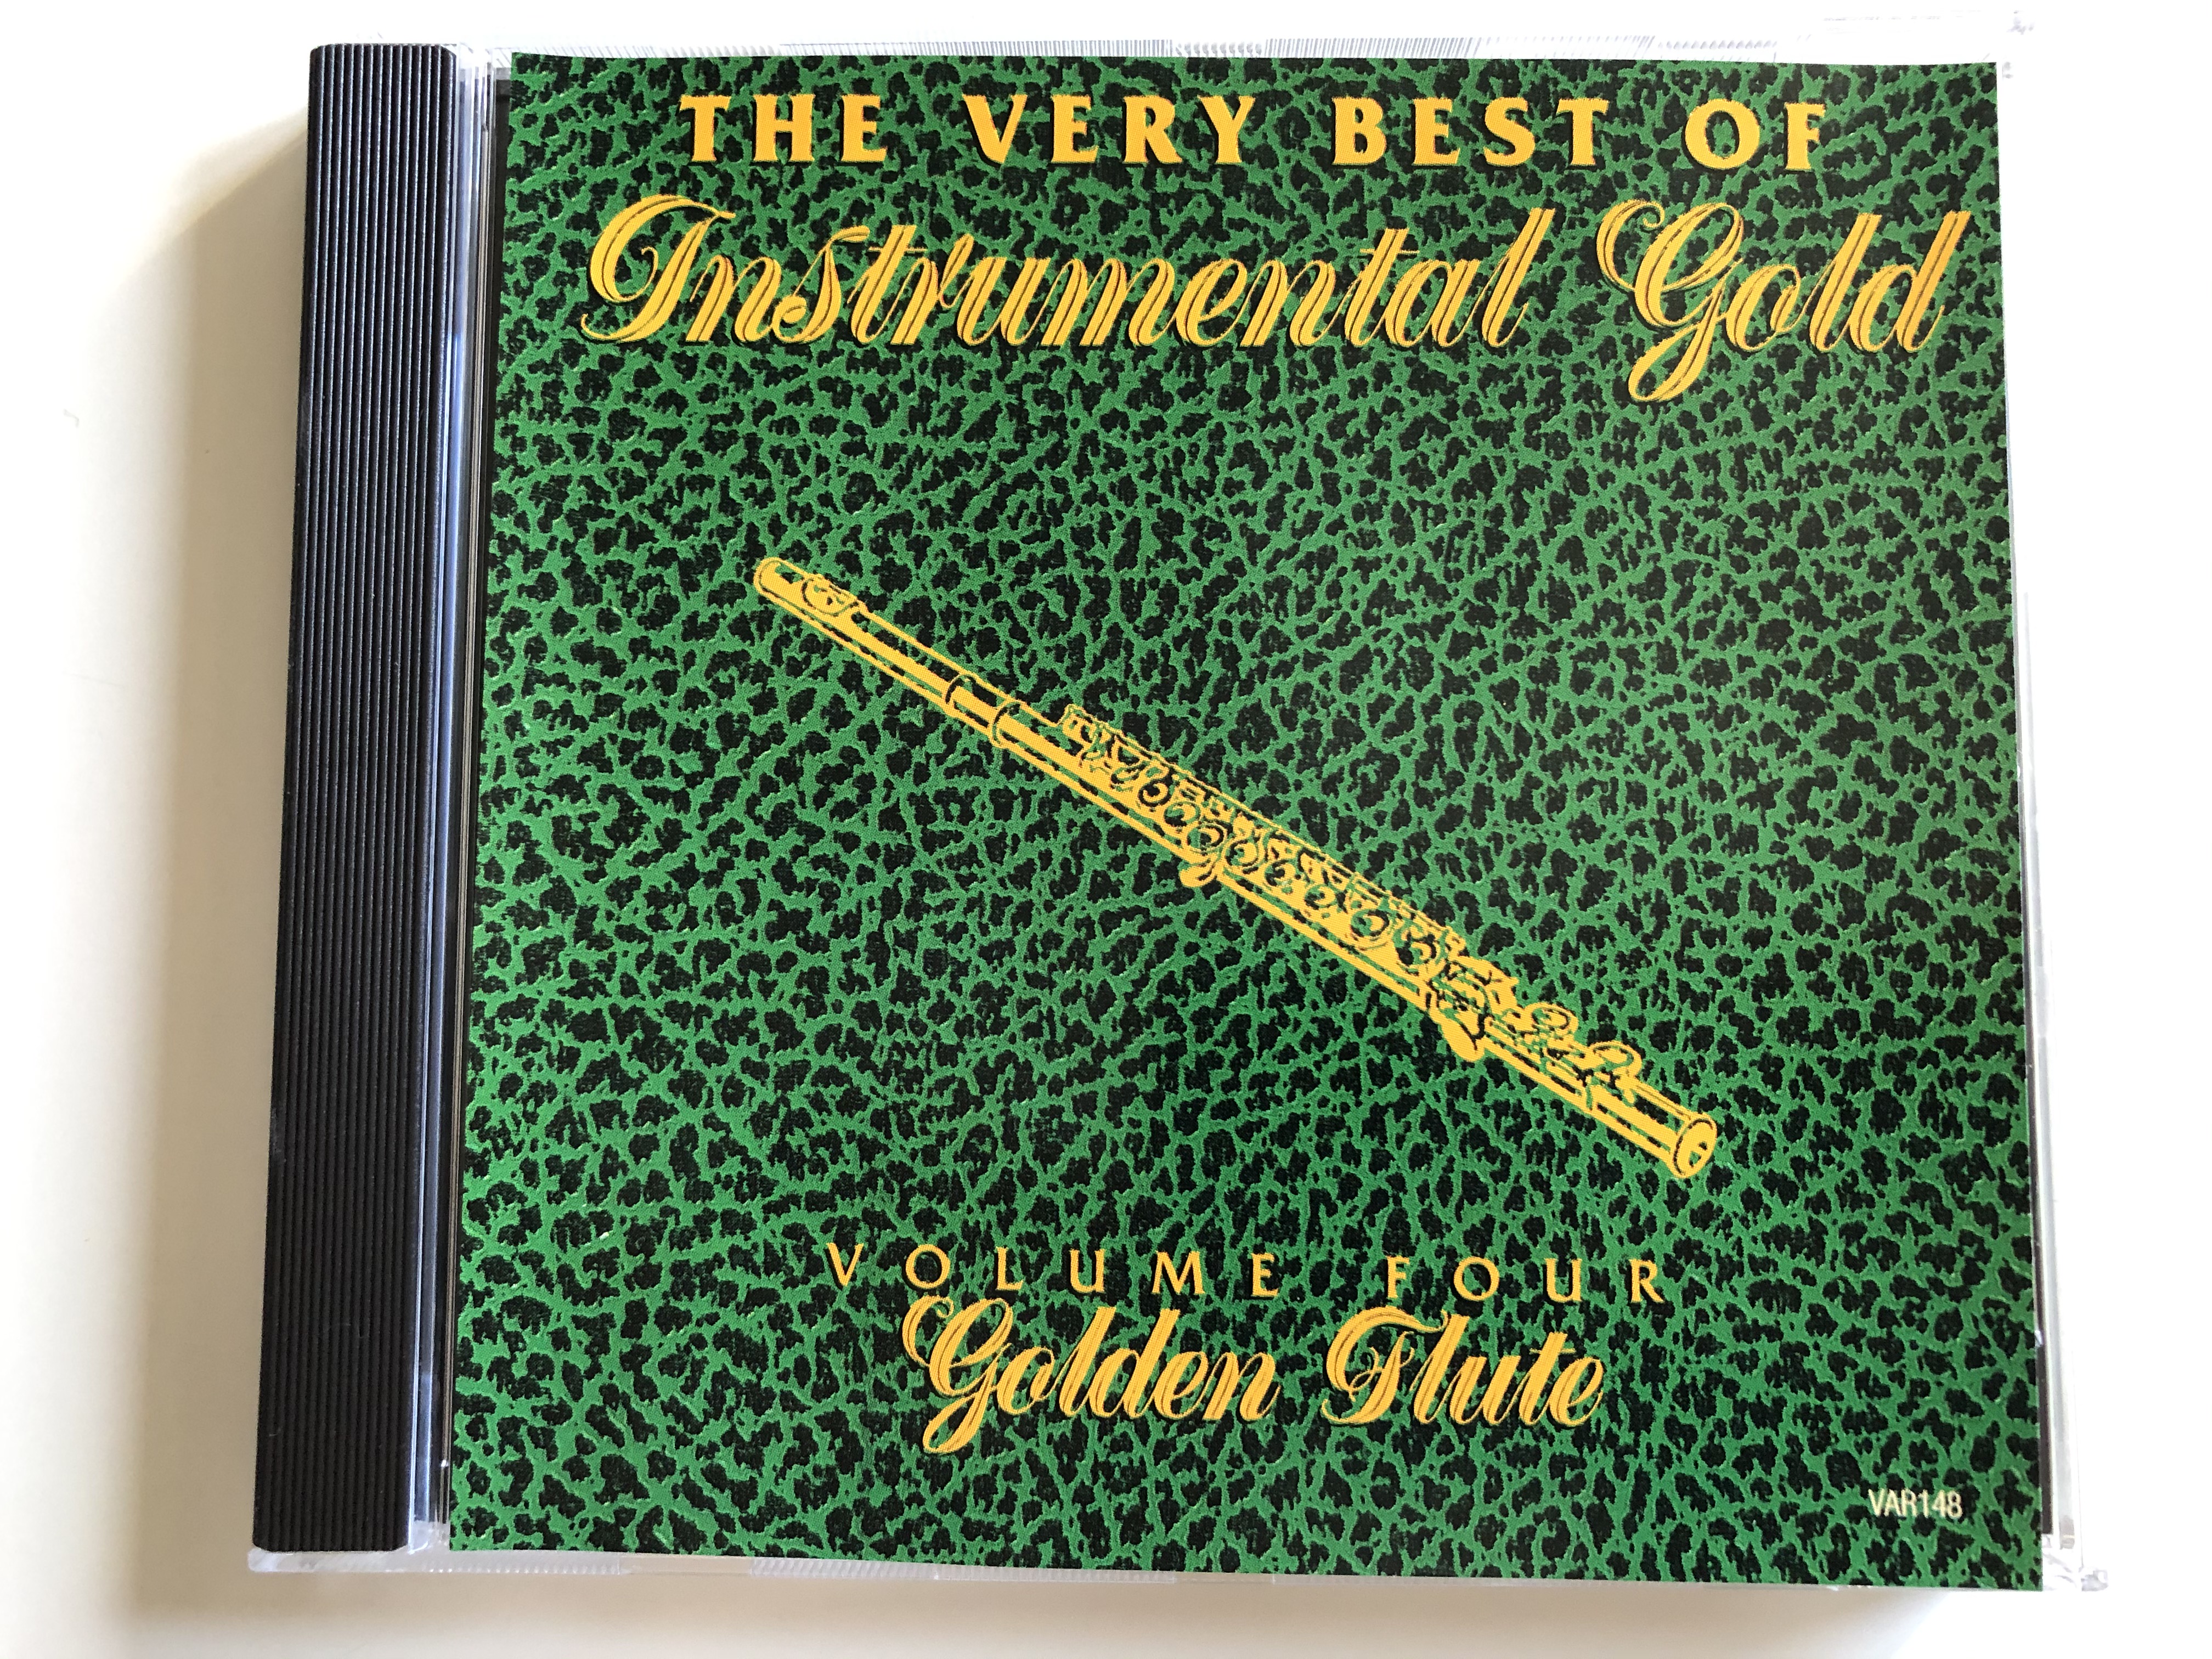 the-very-best-of-instrumental-gold-volume-four-golden-flute-tring-audio-cd-var148-1-.jpg